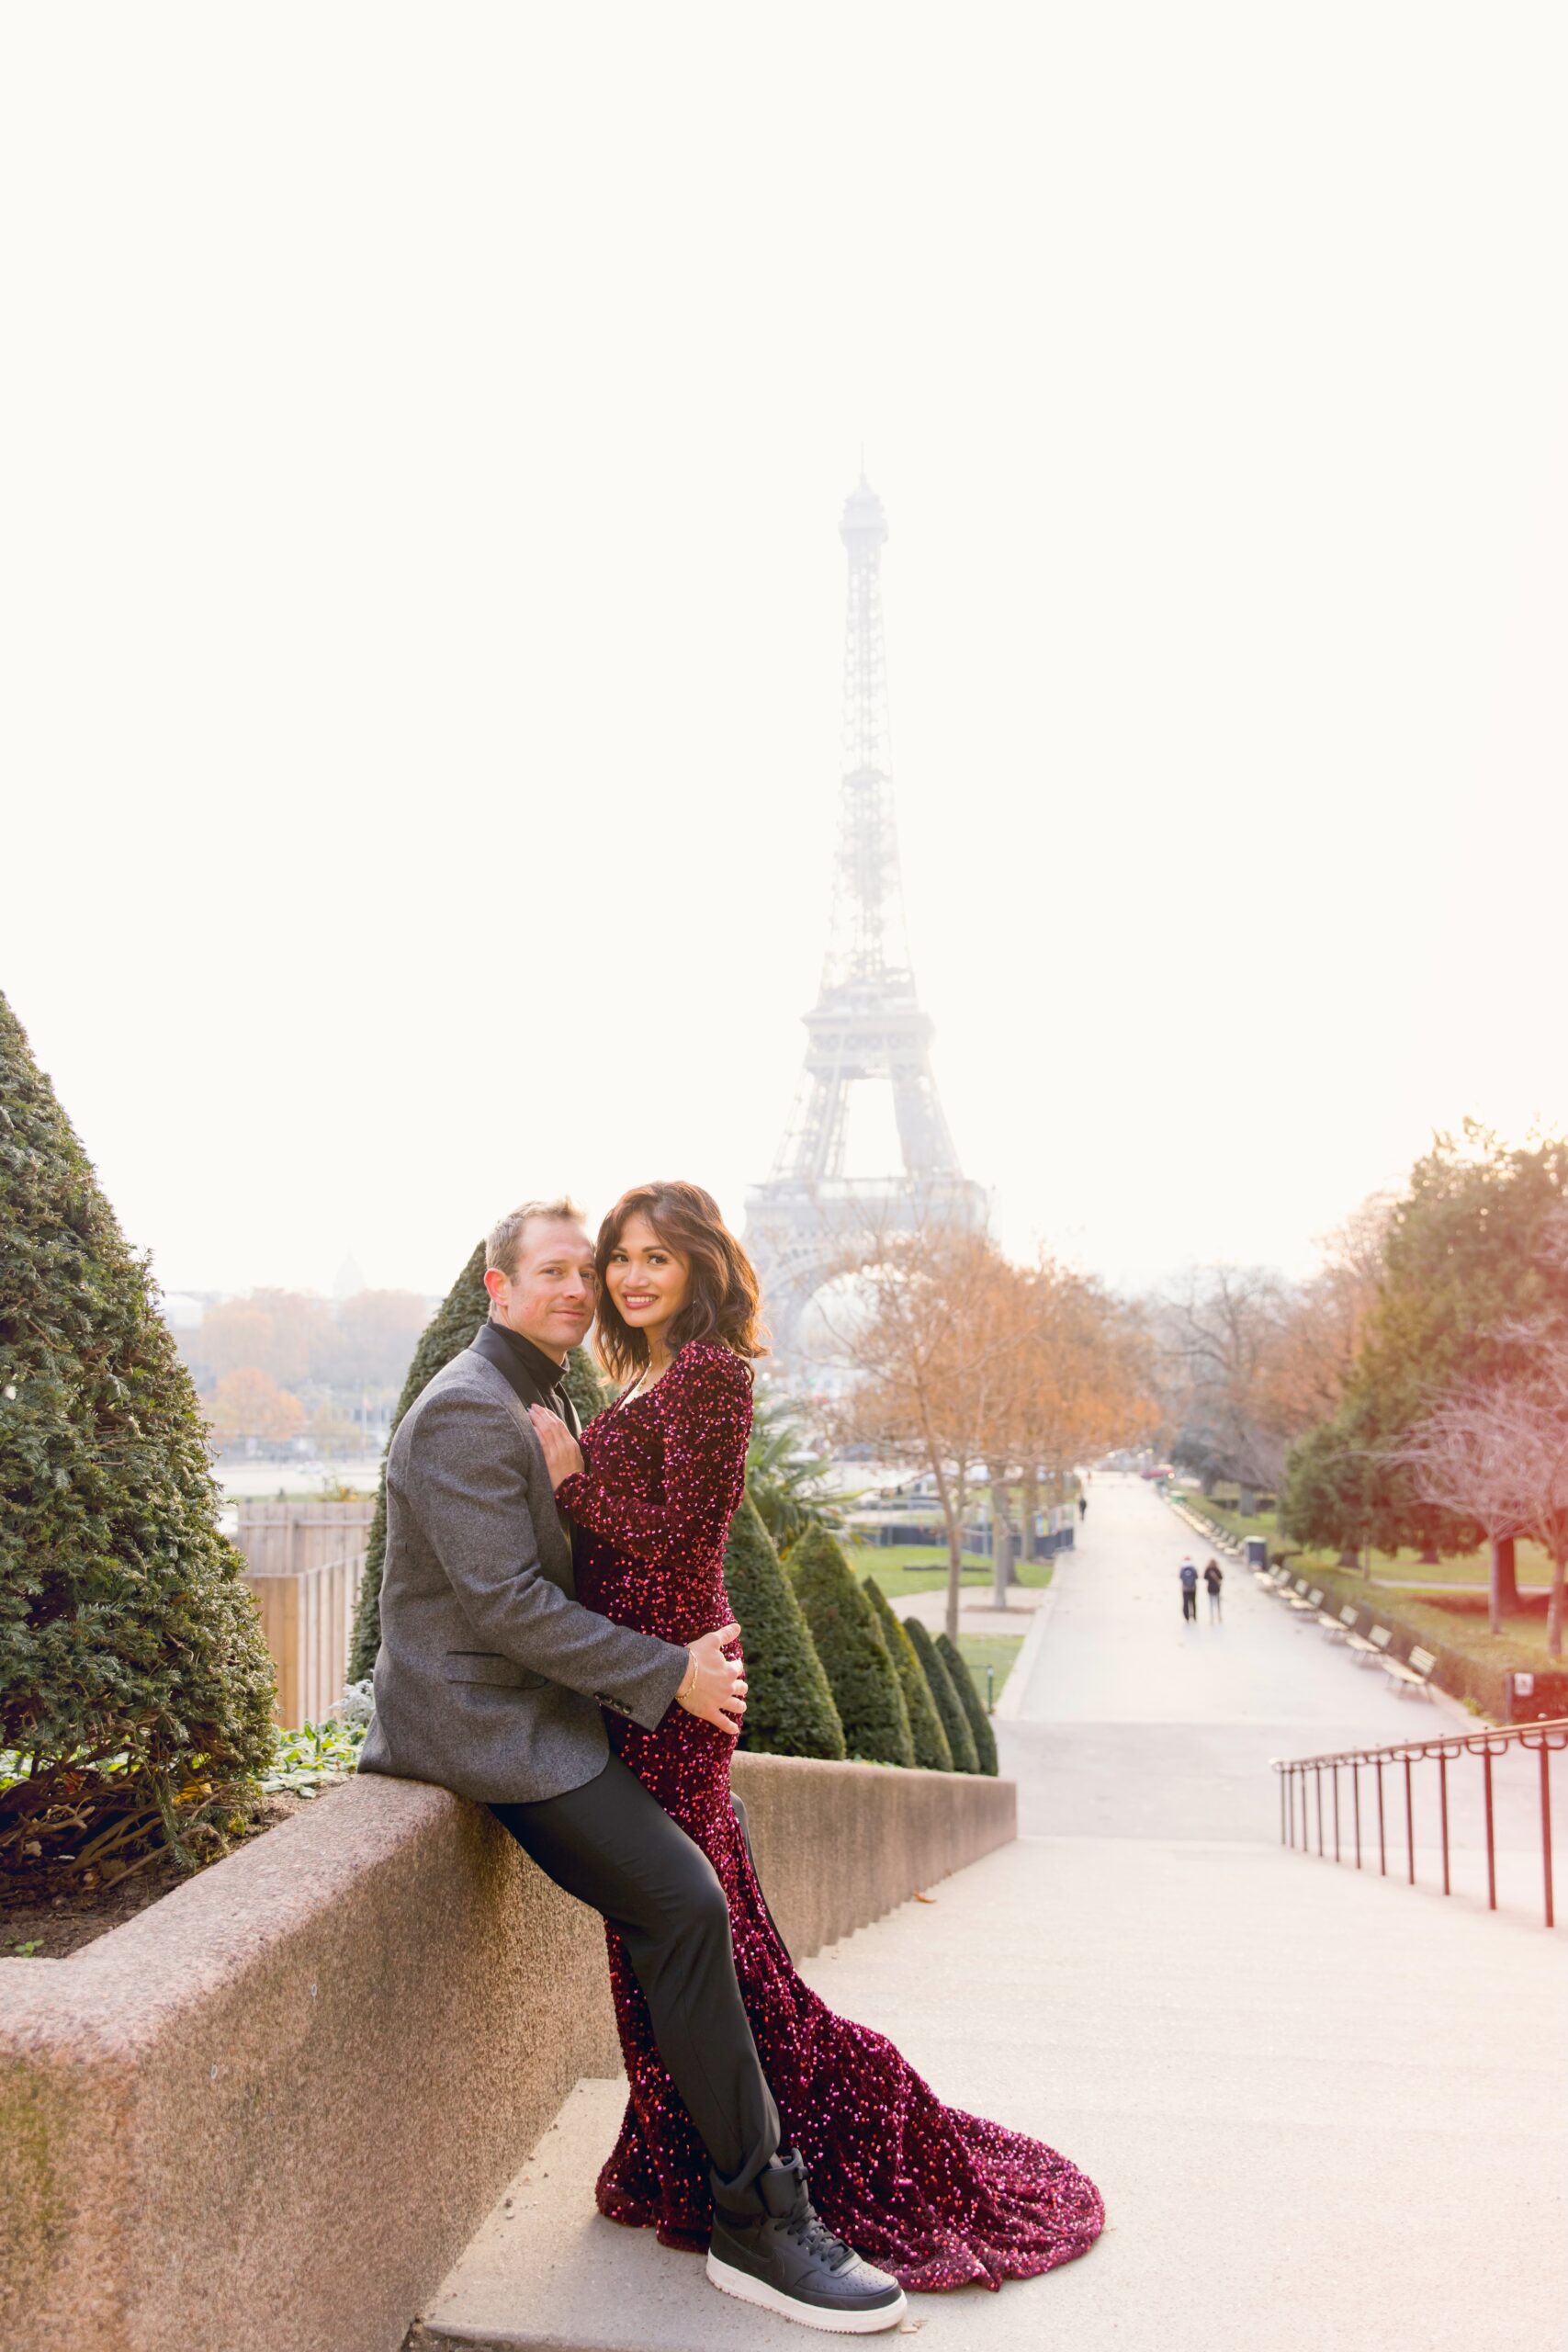 Paris, France, Eiffel Tower, Family Photos 